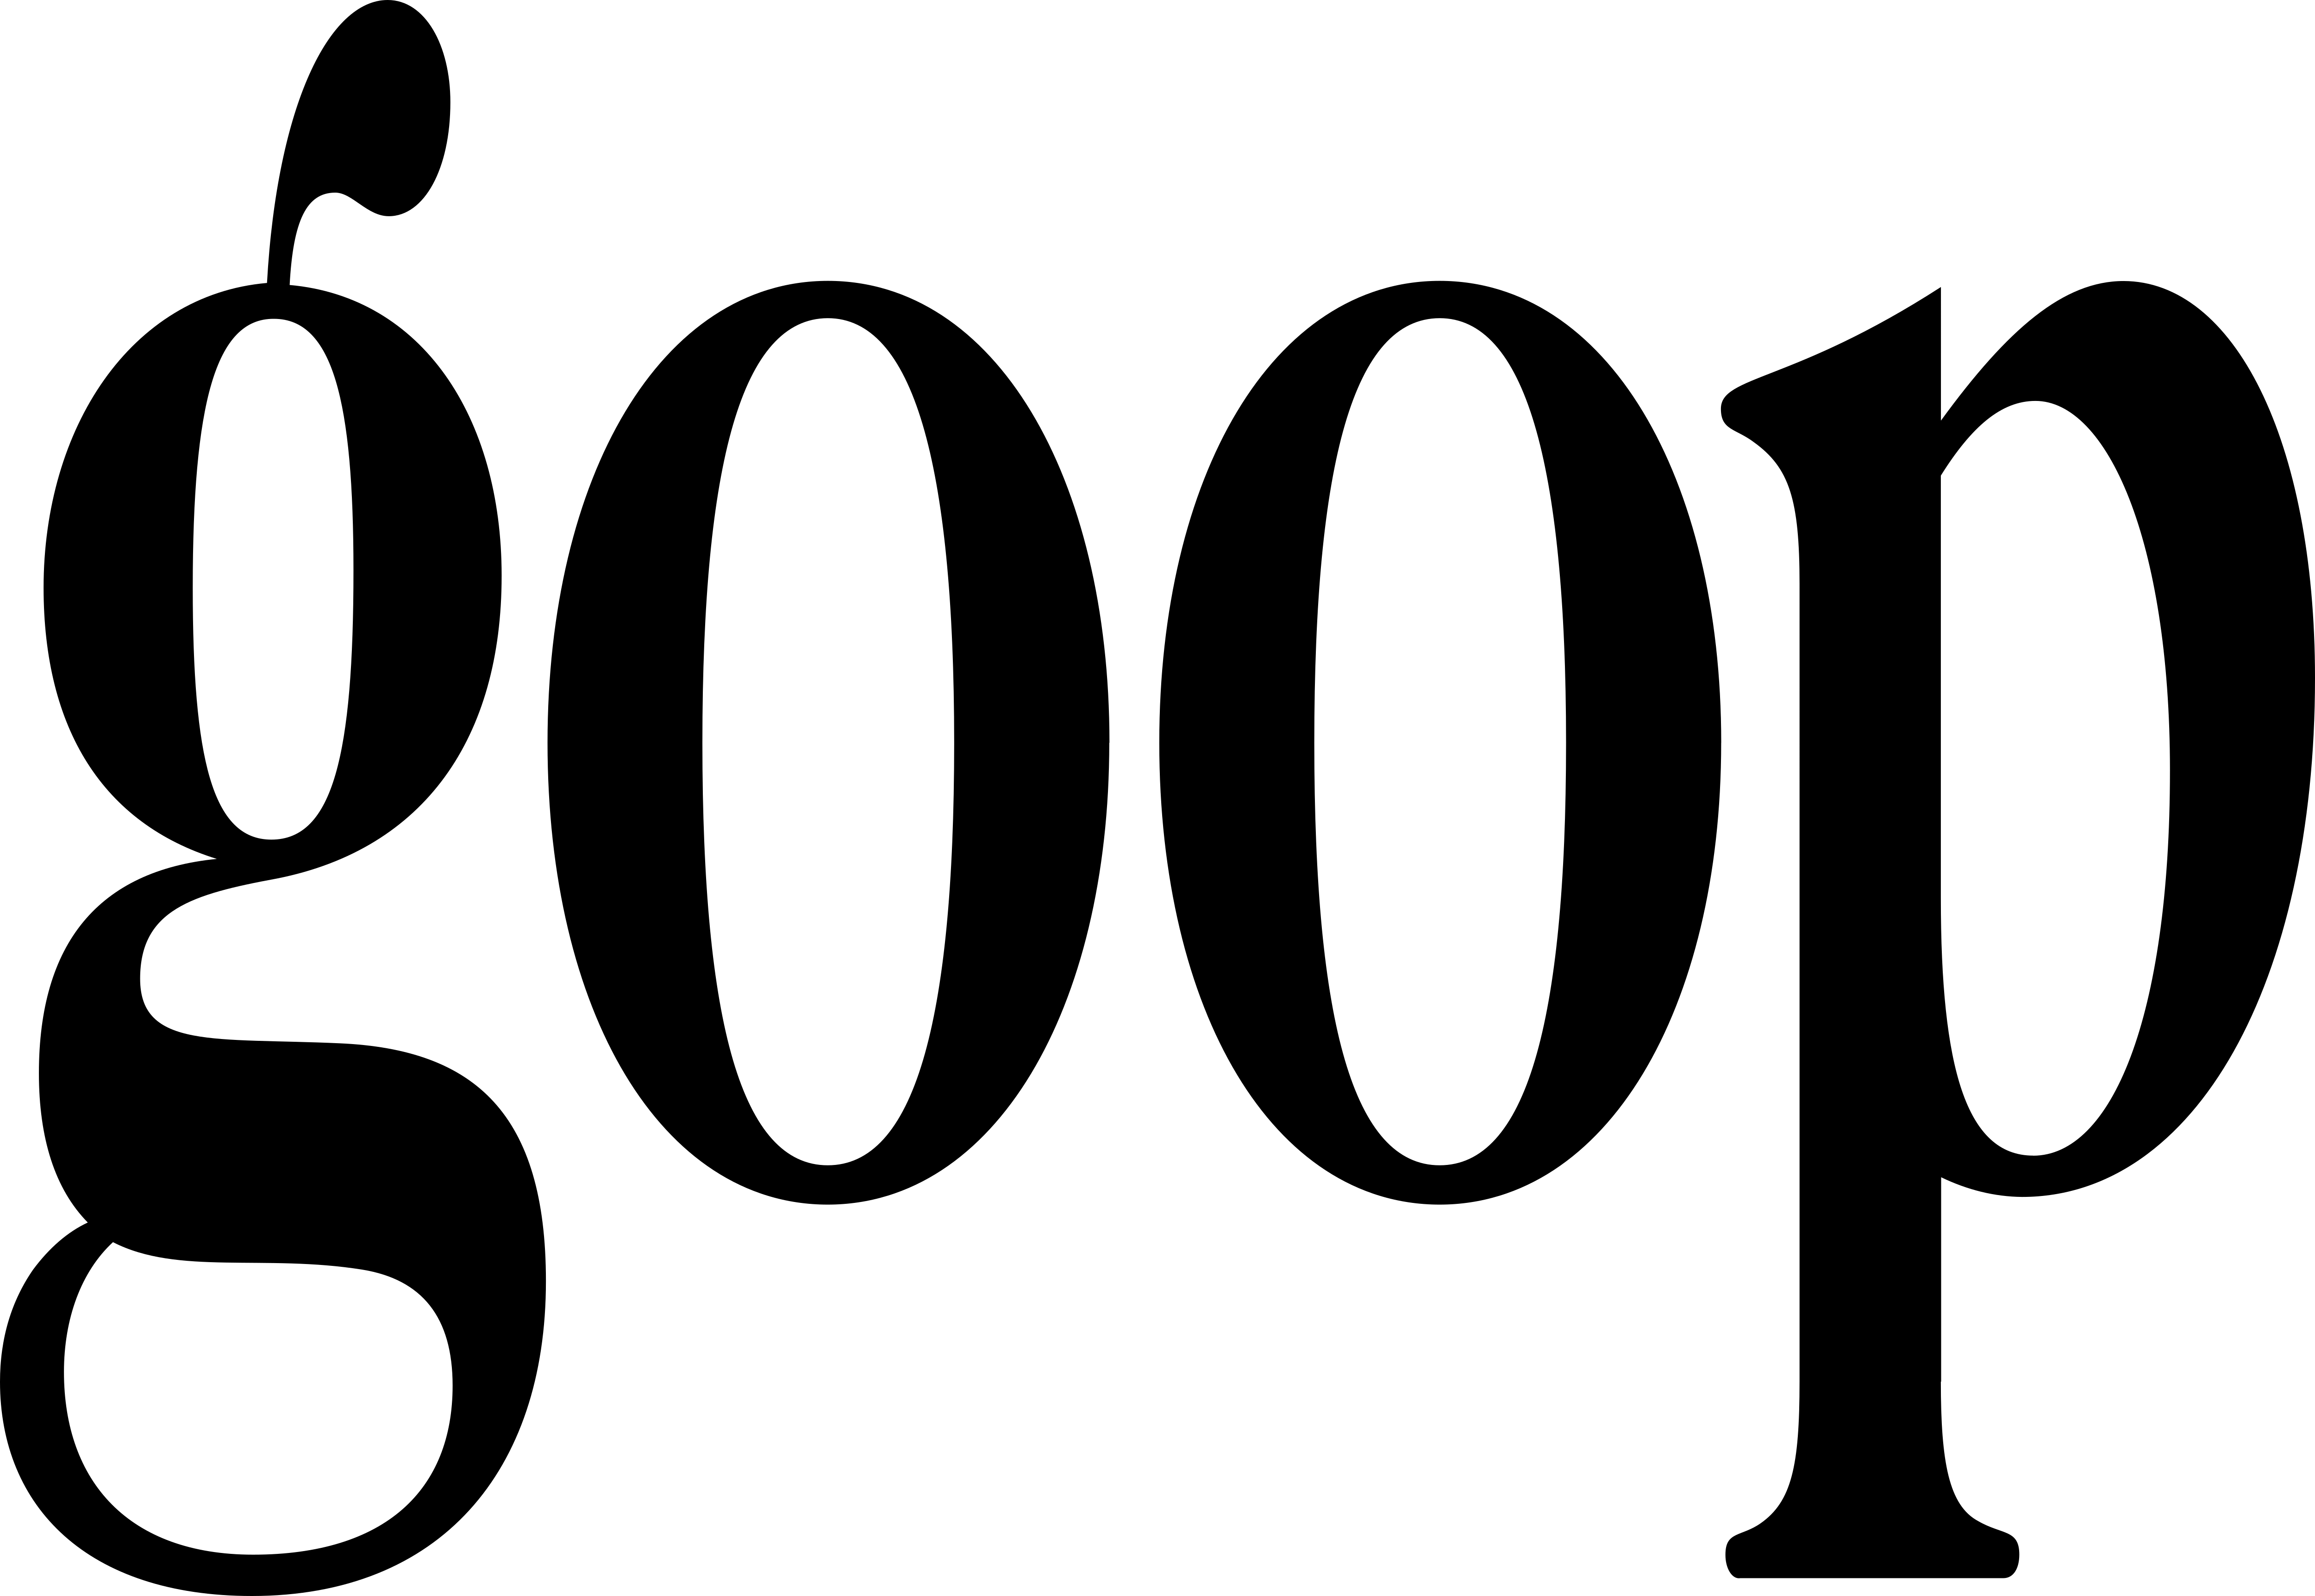 Goop Logo - Goop – Logos Download